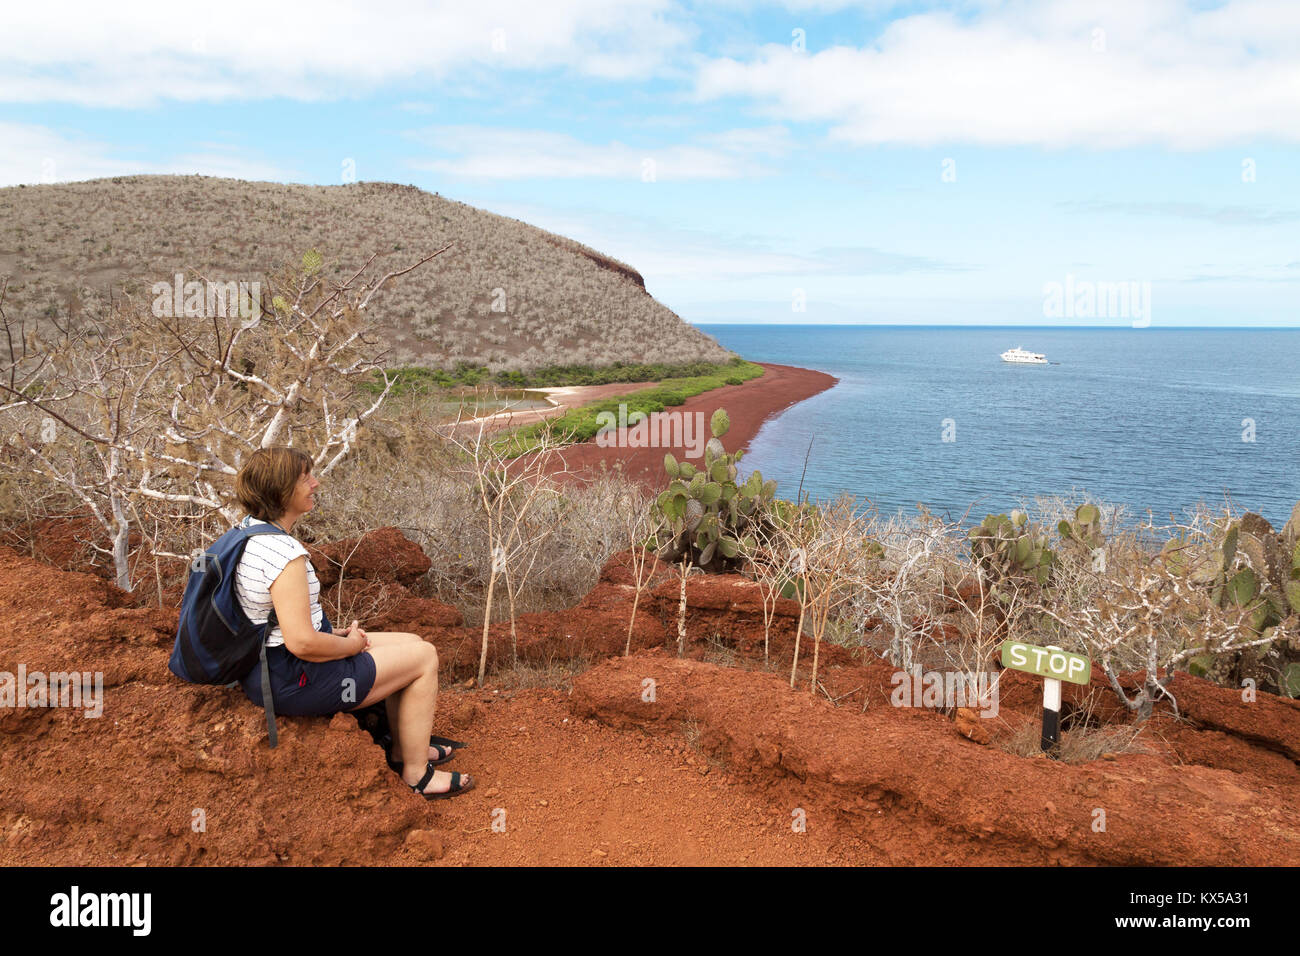 L'île des Galapagos paysage - un touriste en profitant de la vue, l'île de Rabida, îles Galapagos Équateur Amérique du Sud Banque D'Images